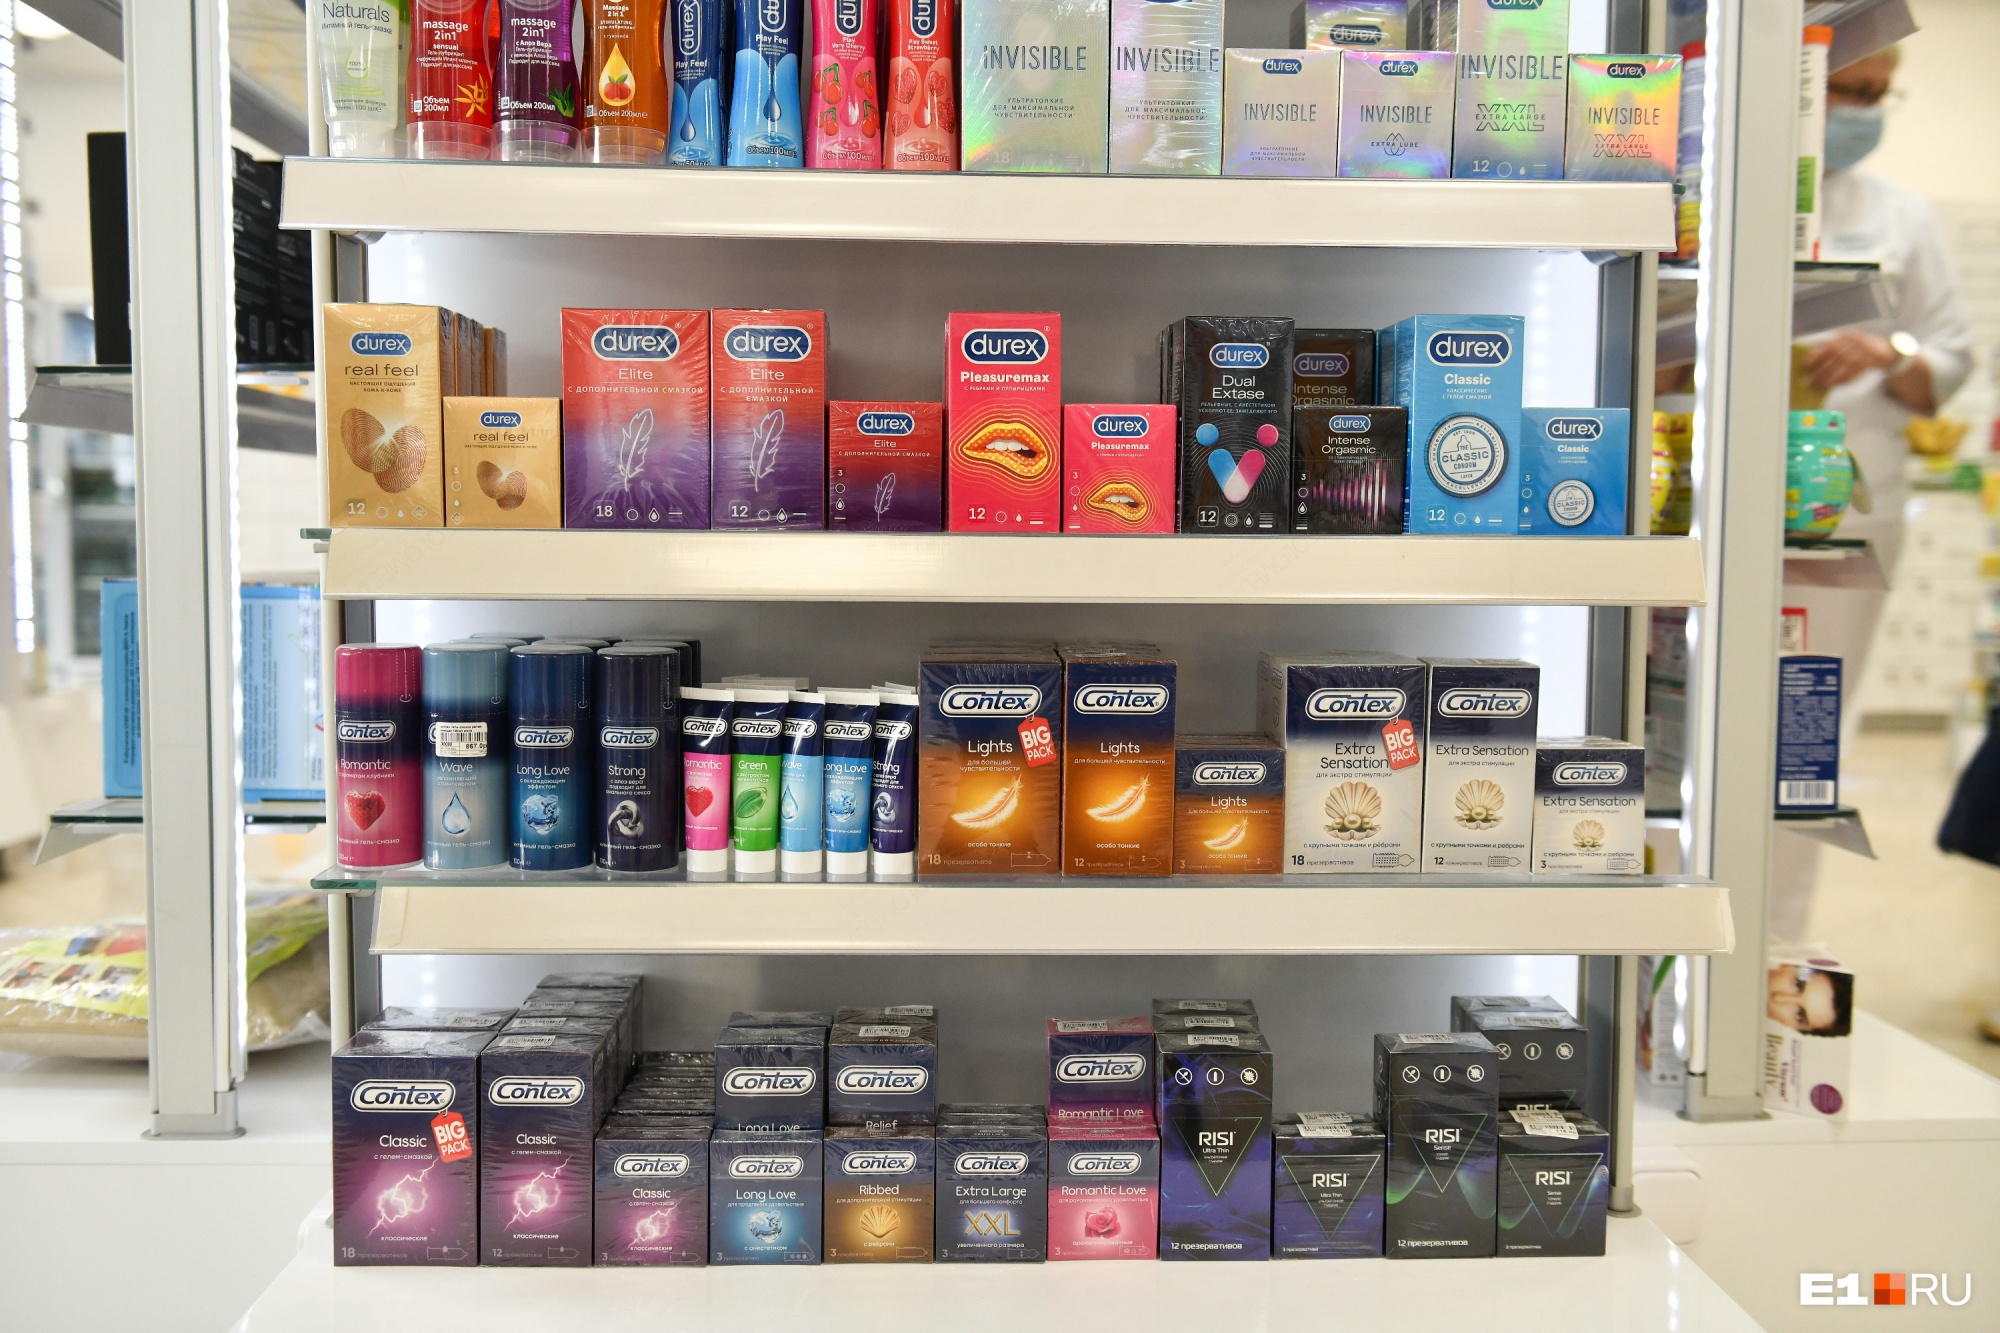 В аптеках продаются импортные аналоги Durex и Contex, но большим спросом у покупателей пользуются именно оригинальные бренды